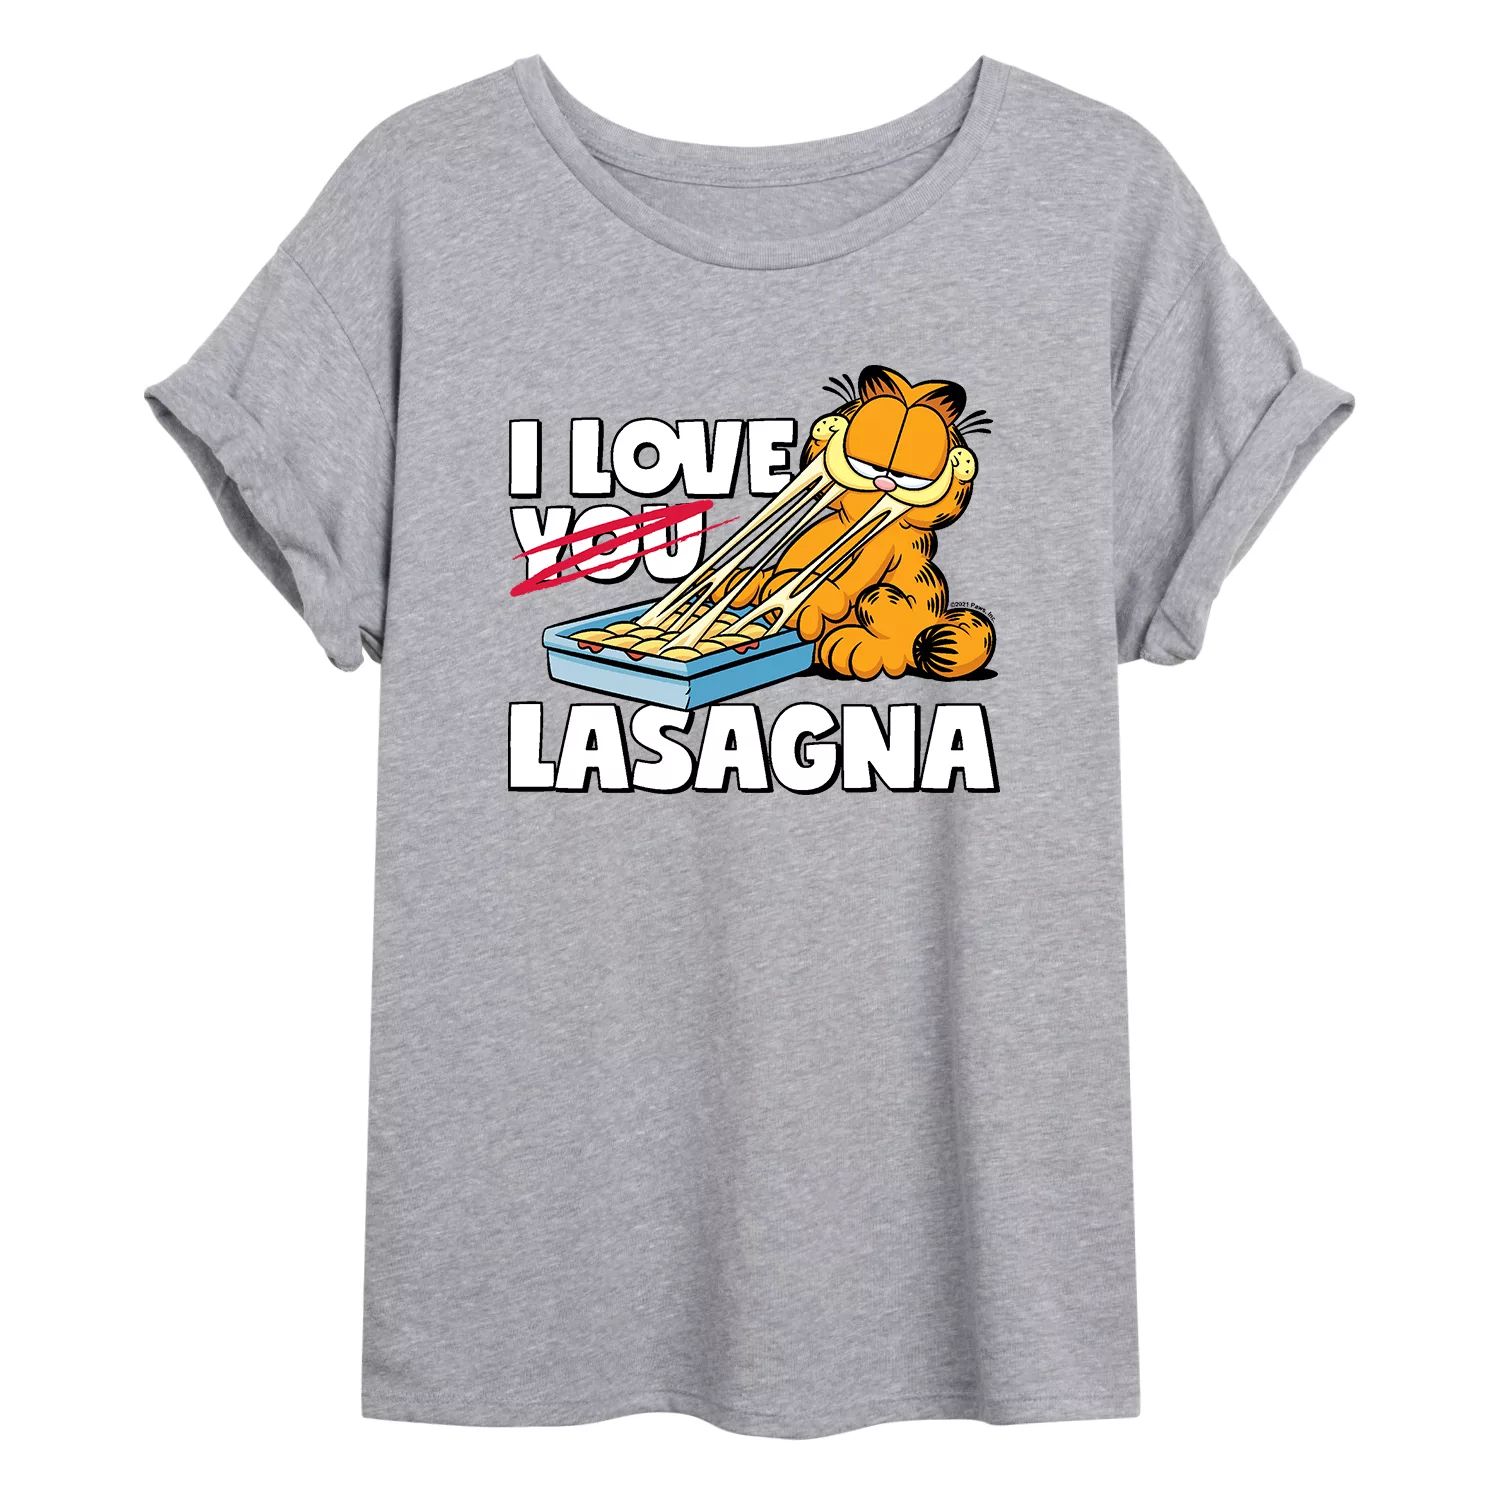 Струящаяся футболка Garfield Love Lasagna для юниоров Licensed Character garfield lasagna party ps4 русские субтитры